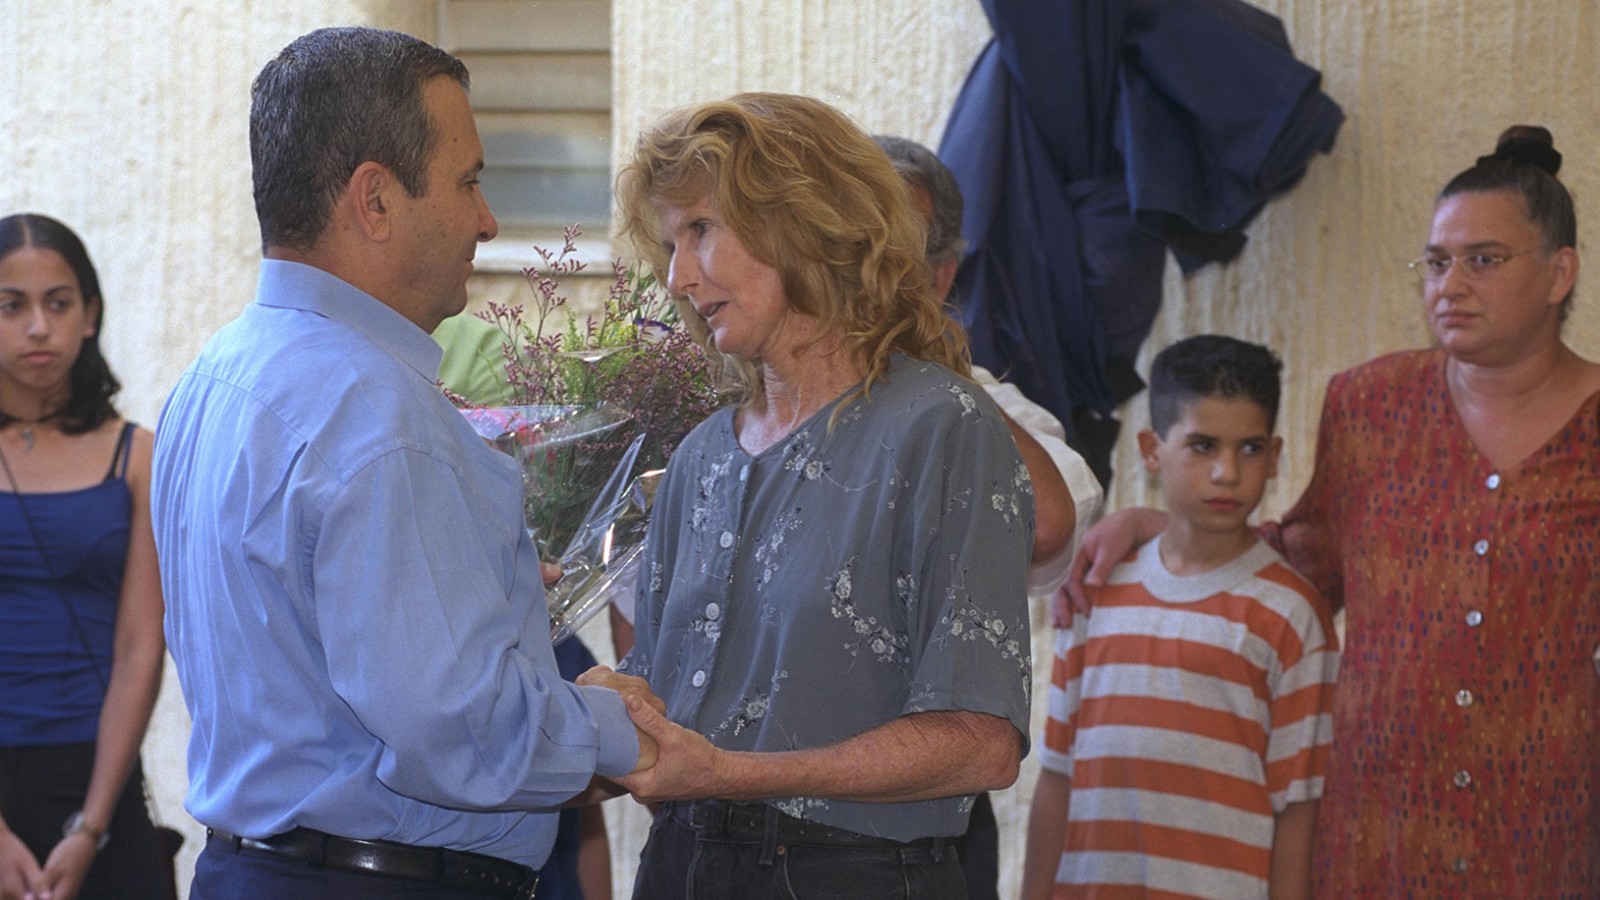 פגישת ראש הממשלה אהוד ברק עם אורנה שמעוני מארגון "ארבע אמהות", בקיבוץ כפר גלעדי בצפון, 1999 (צילום: עמוס בן גרשום/ לע"מ).